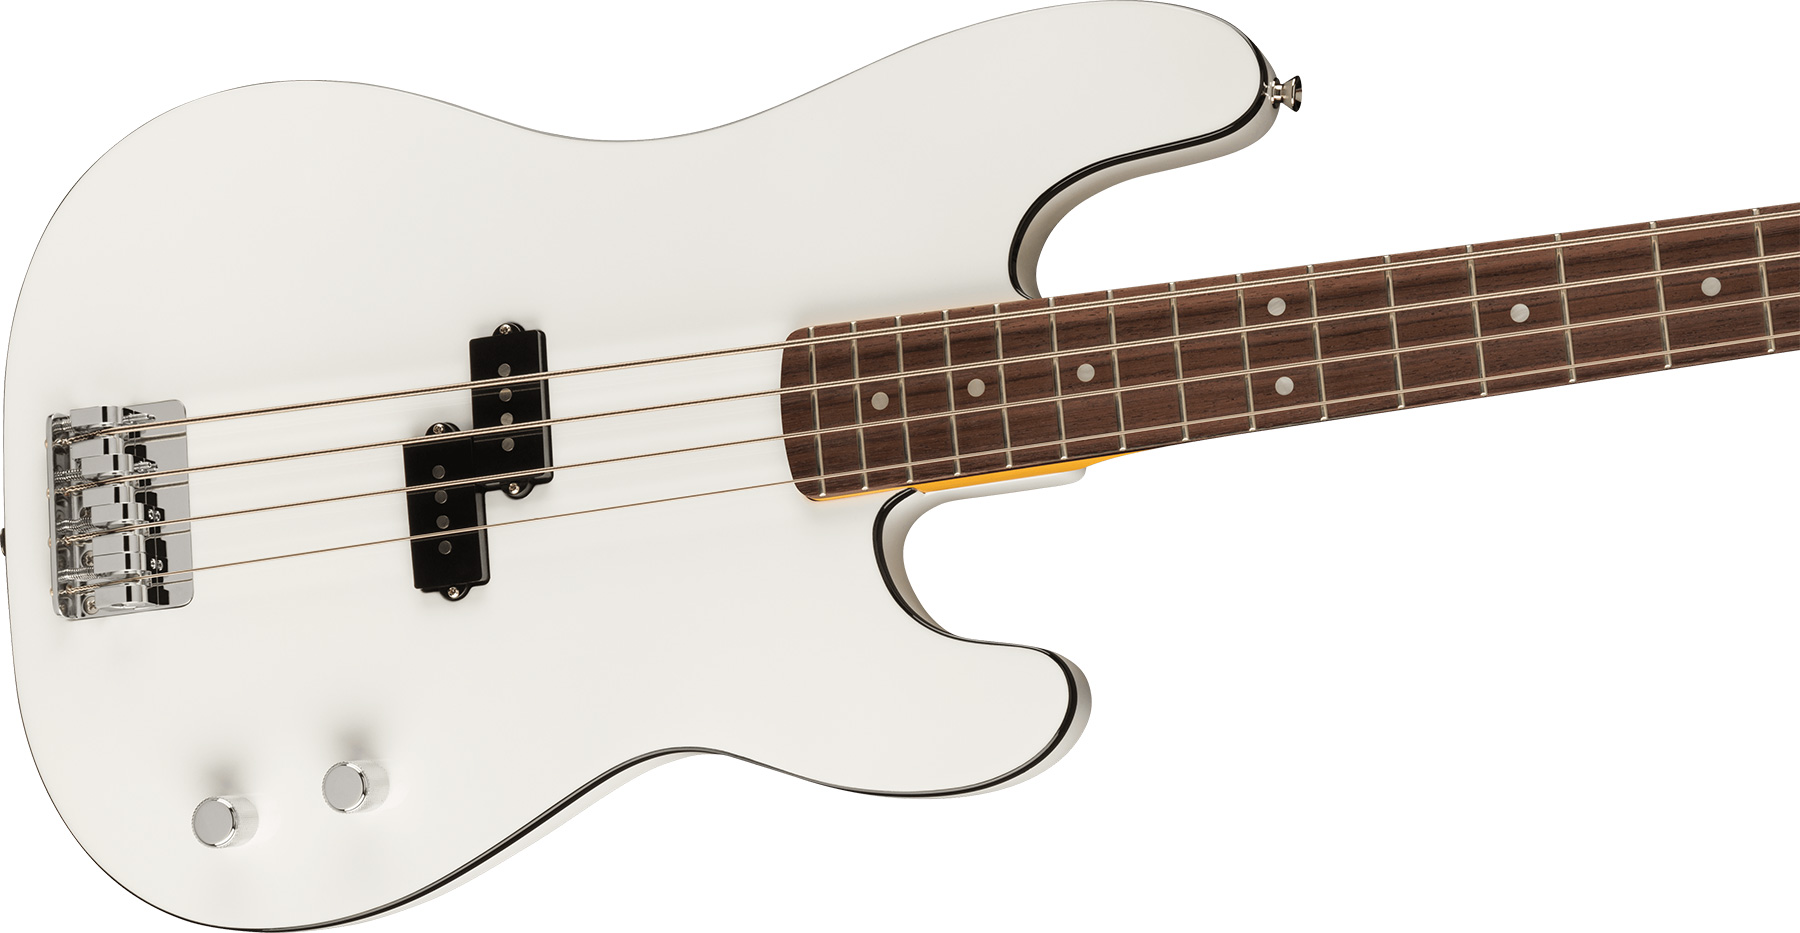 Fender Precision Bass Aerodyne Special Jap Rw - Bright White - Bajo eléctrico de cuerpo sólido - Variation 2